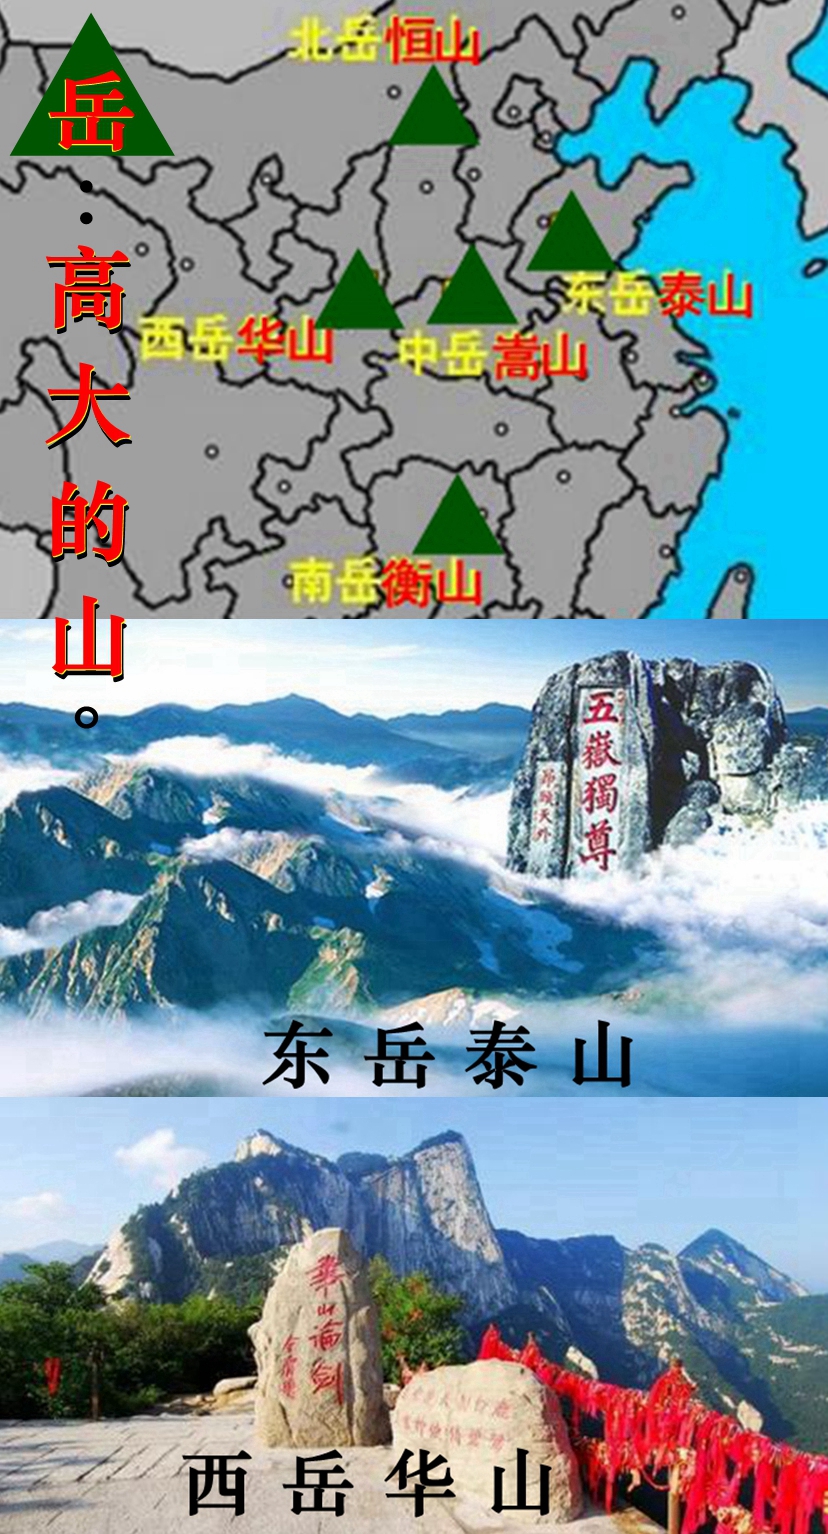 四大名山 五岳图片